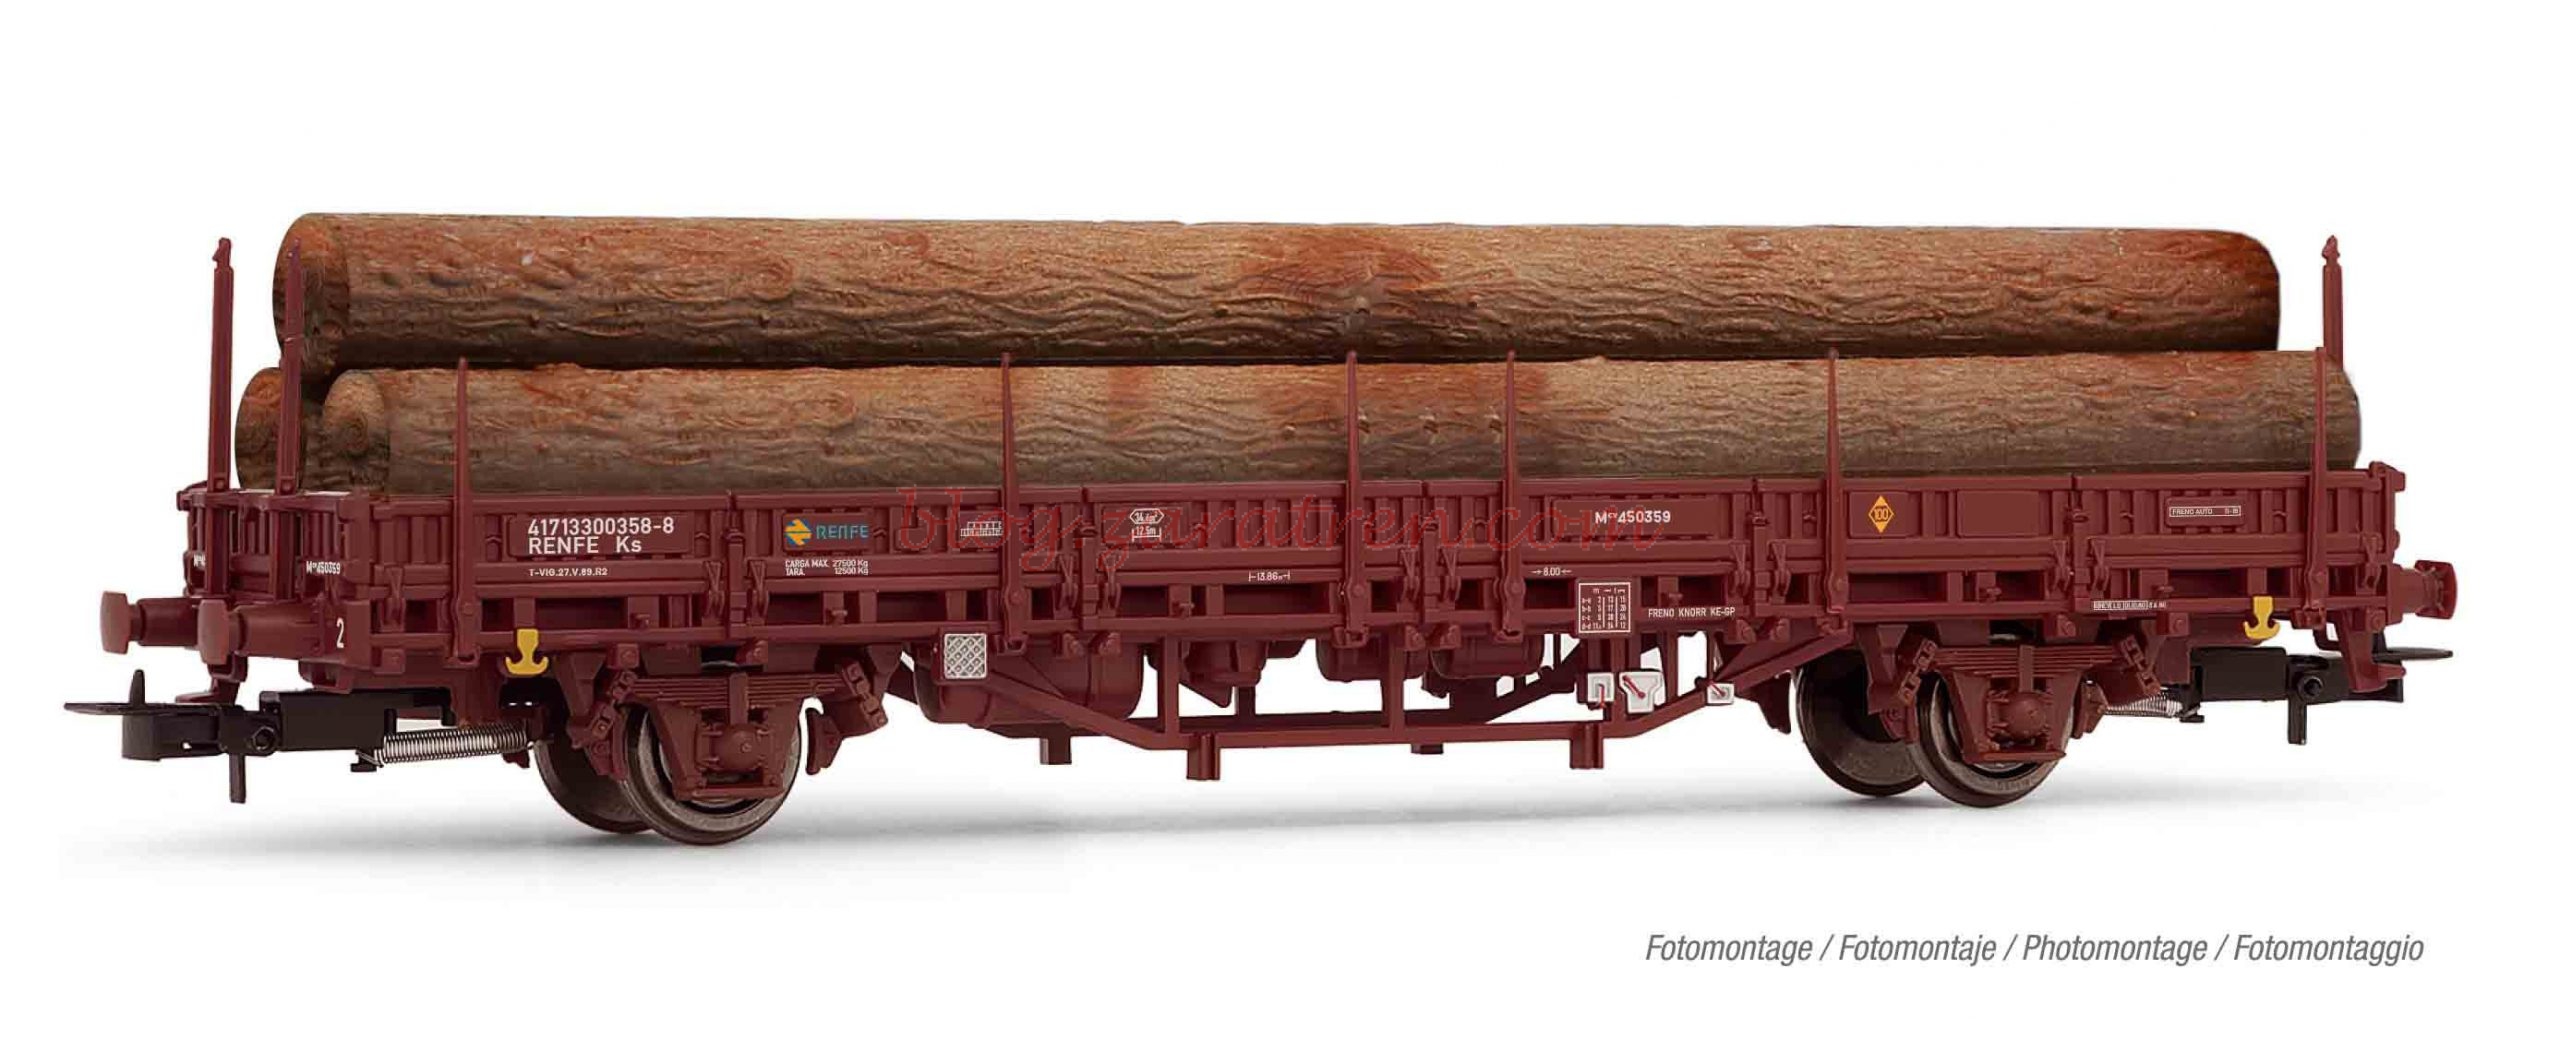 Electrotren – Vagón plataforma oxido con carga de troncos de madera, Escala H0. Ref: E1658.